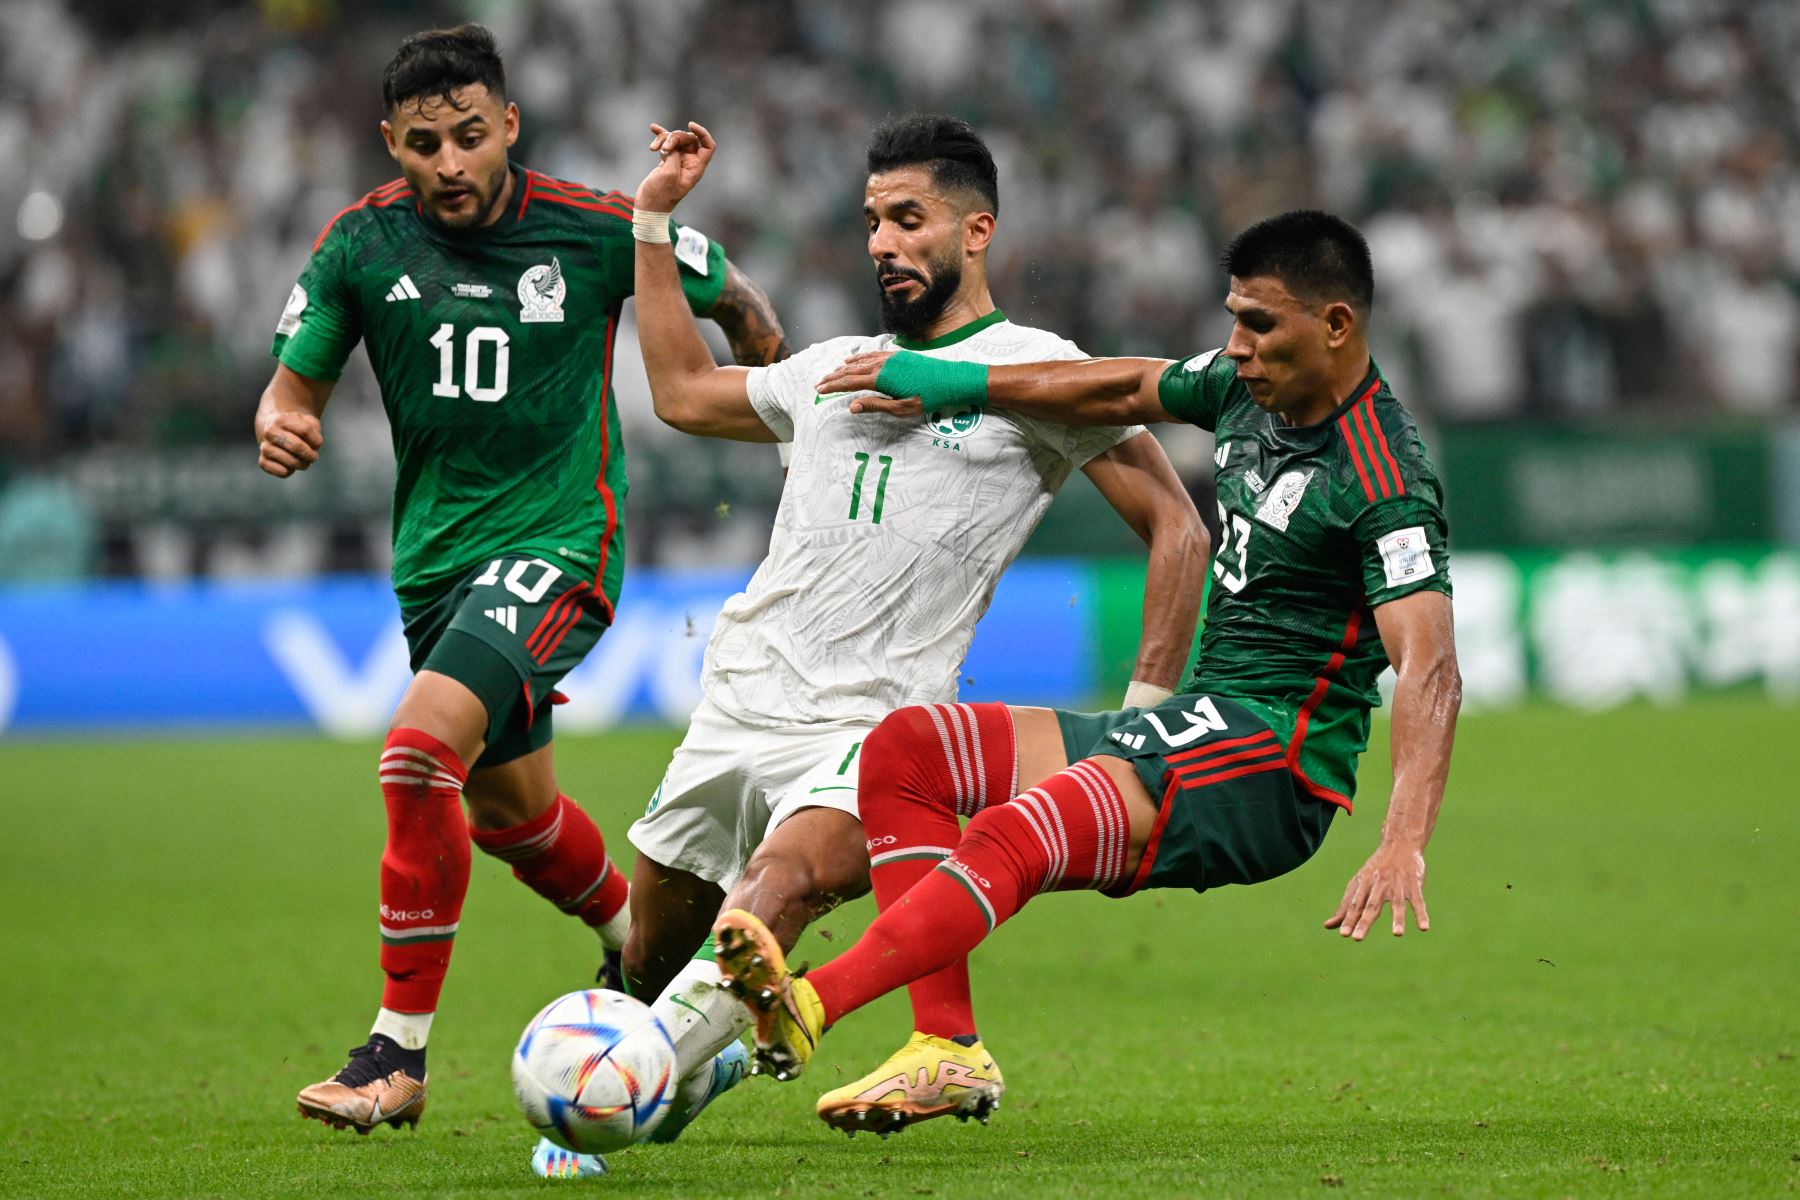 El defensor de México Jesús Gallardo lucha por el balón con el delantero de Arabia Saudita Saleh Al-Shehri durante el partido de fútbol del Grupo C de la Copa Mundial Qatar 2022 entre Arabia Saudita y México en el Estadio Lusail en Lusail, al norte de Doha el 30 de noviembre de 2022. Foto: AFP